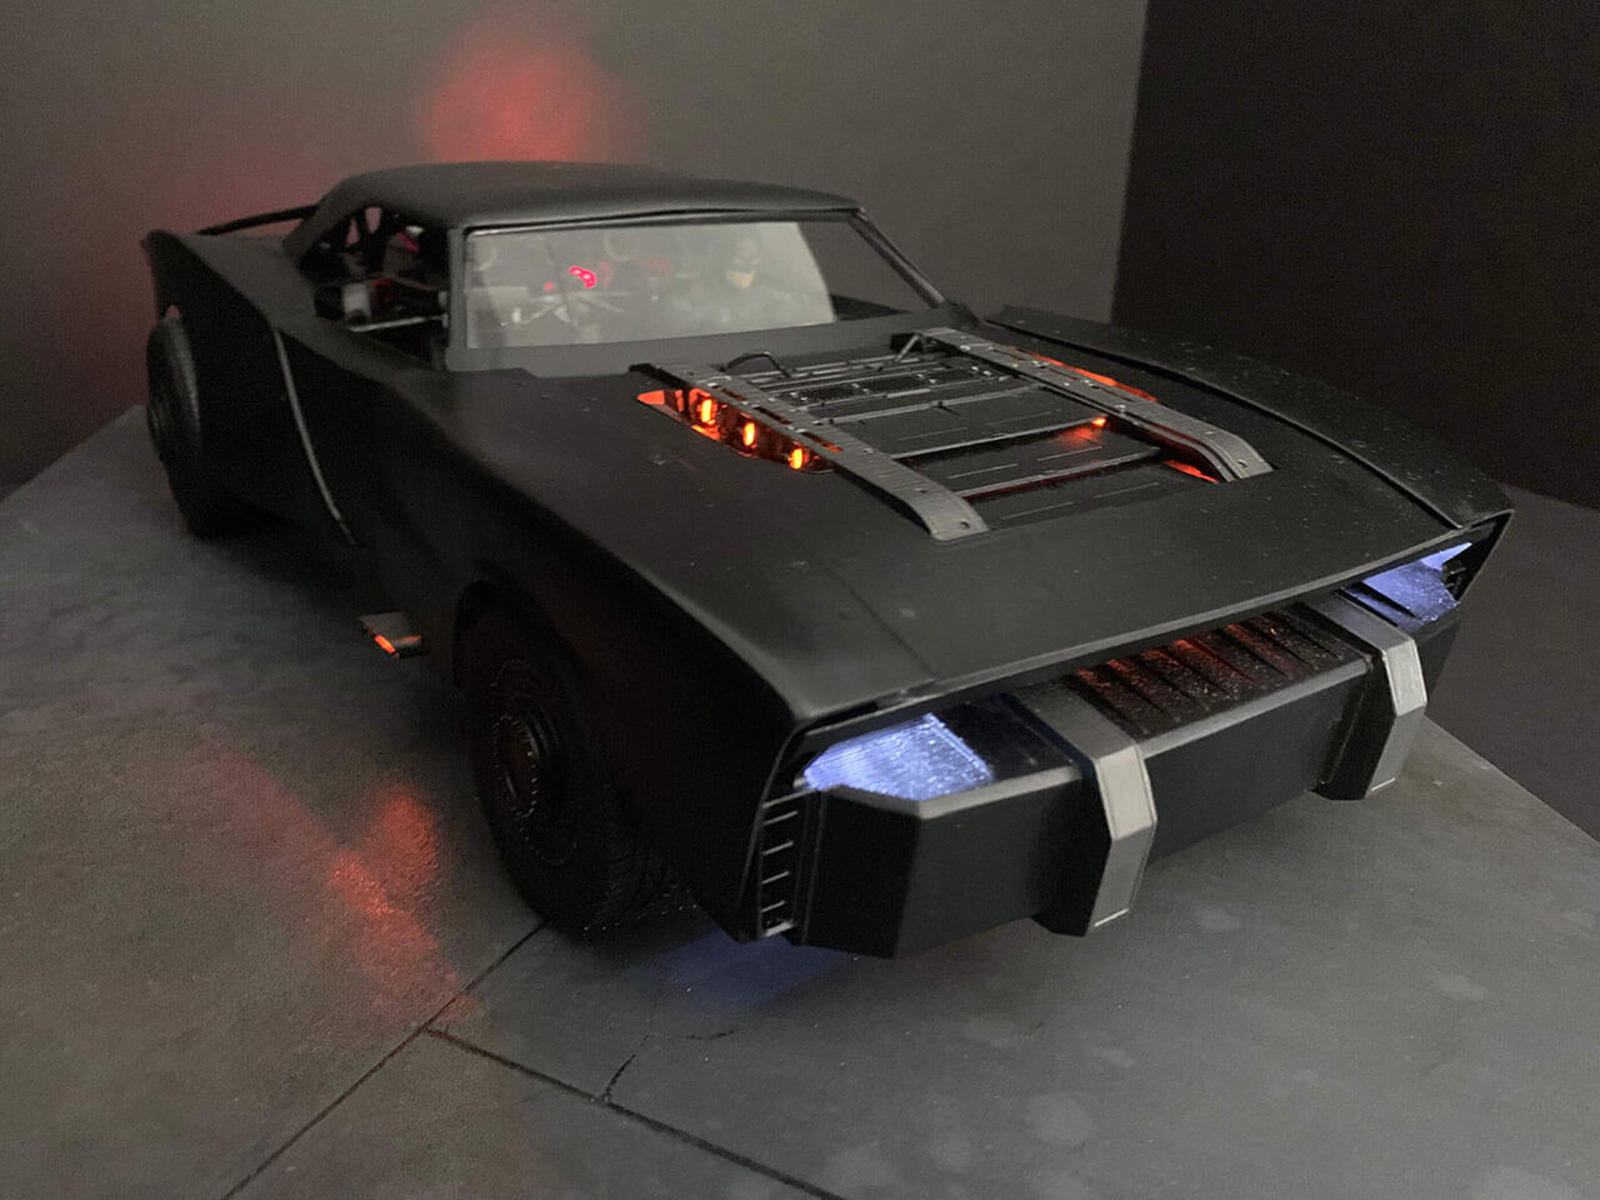 سيارة باتموبيل الجديدة تظهر في إعلان فيلم باتمان القادم 7